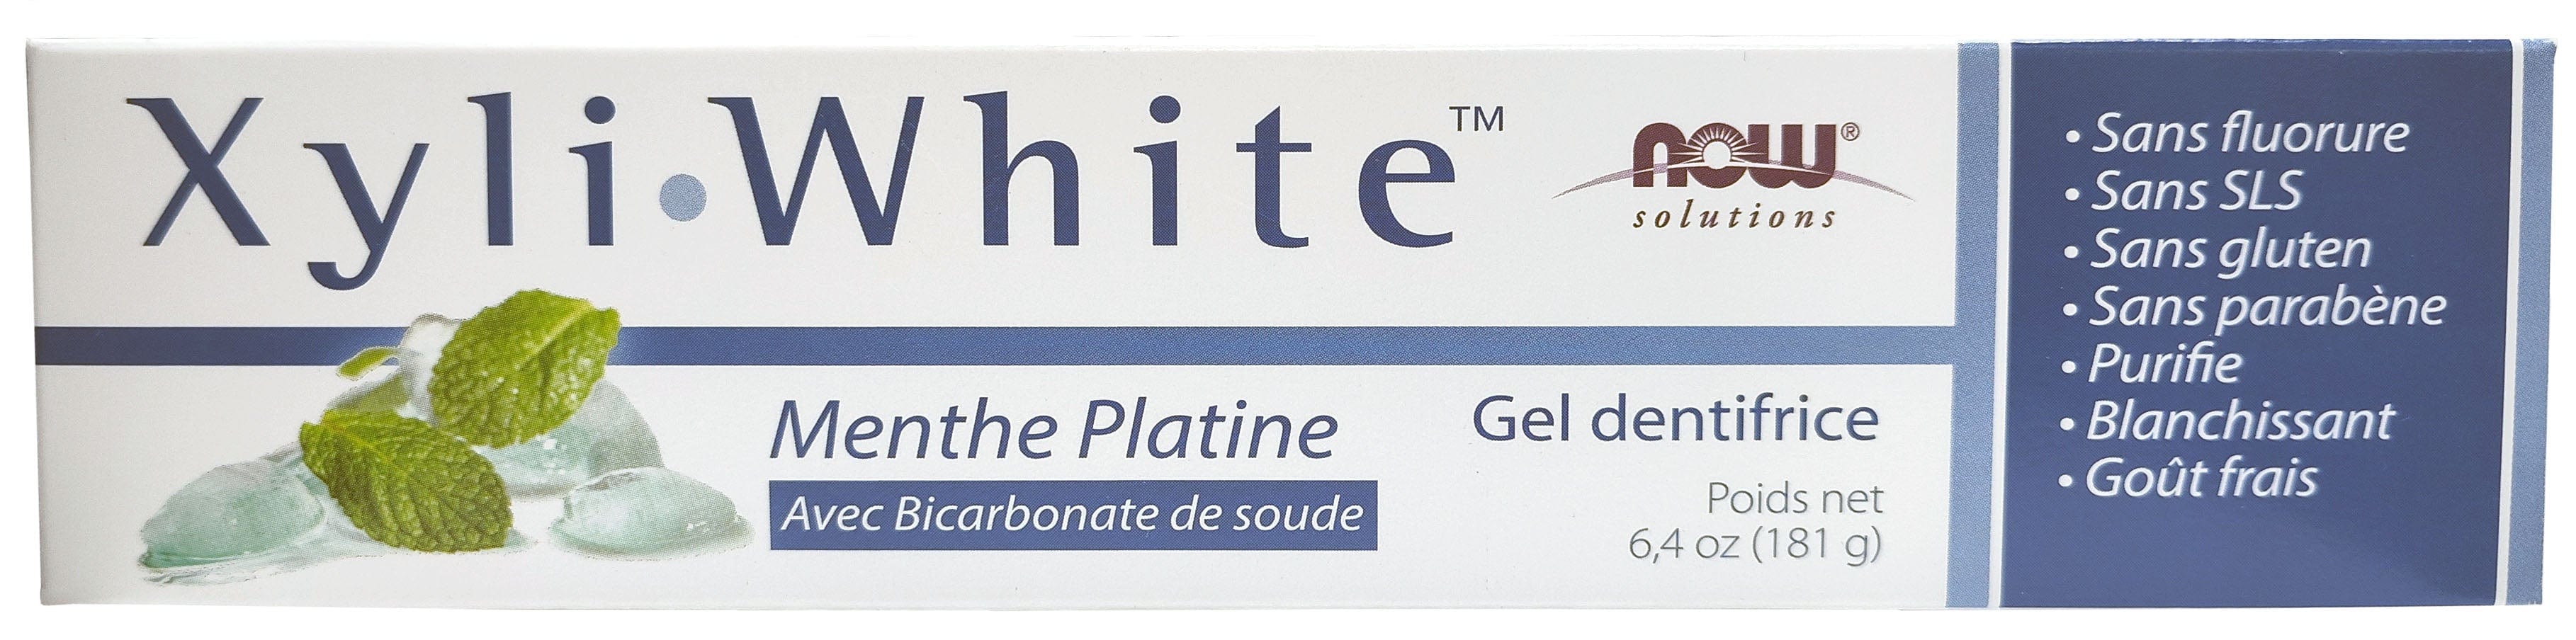 NOW Soins & beauté Gel dentifrice xyliwhite avec bicarbonate de soude (menthe platine) 181g